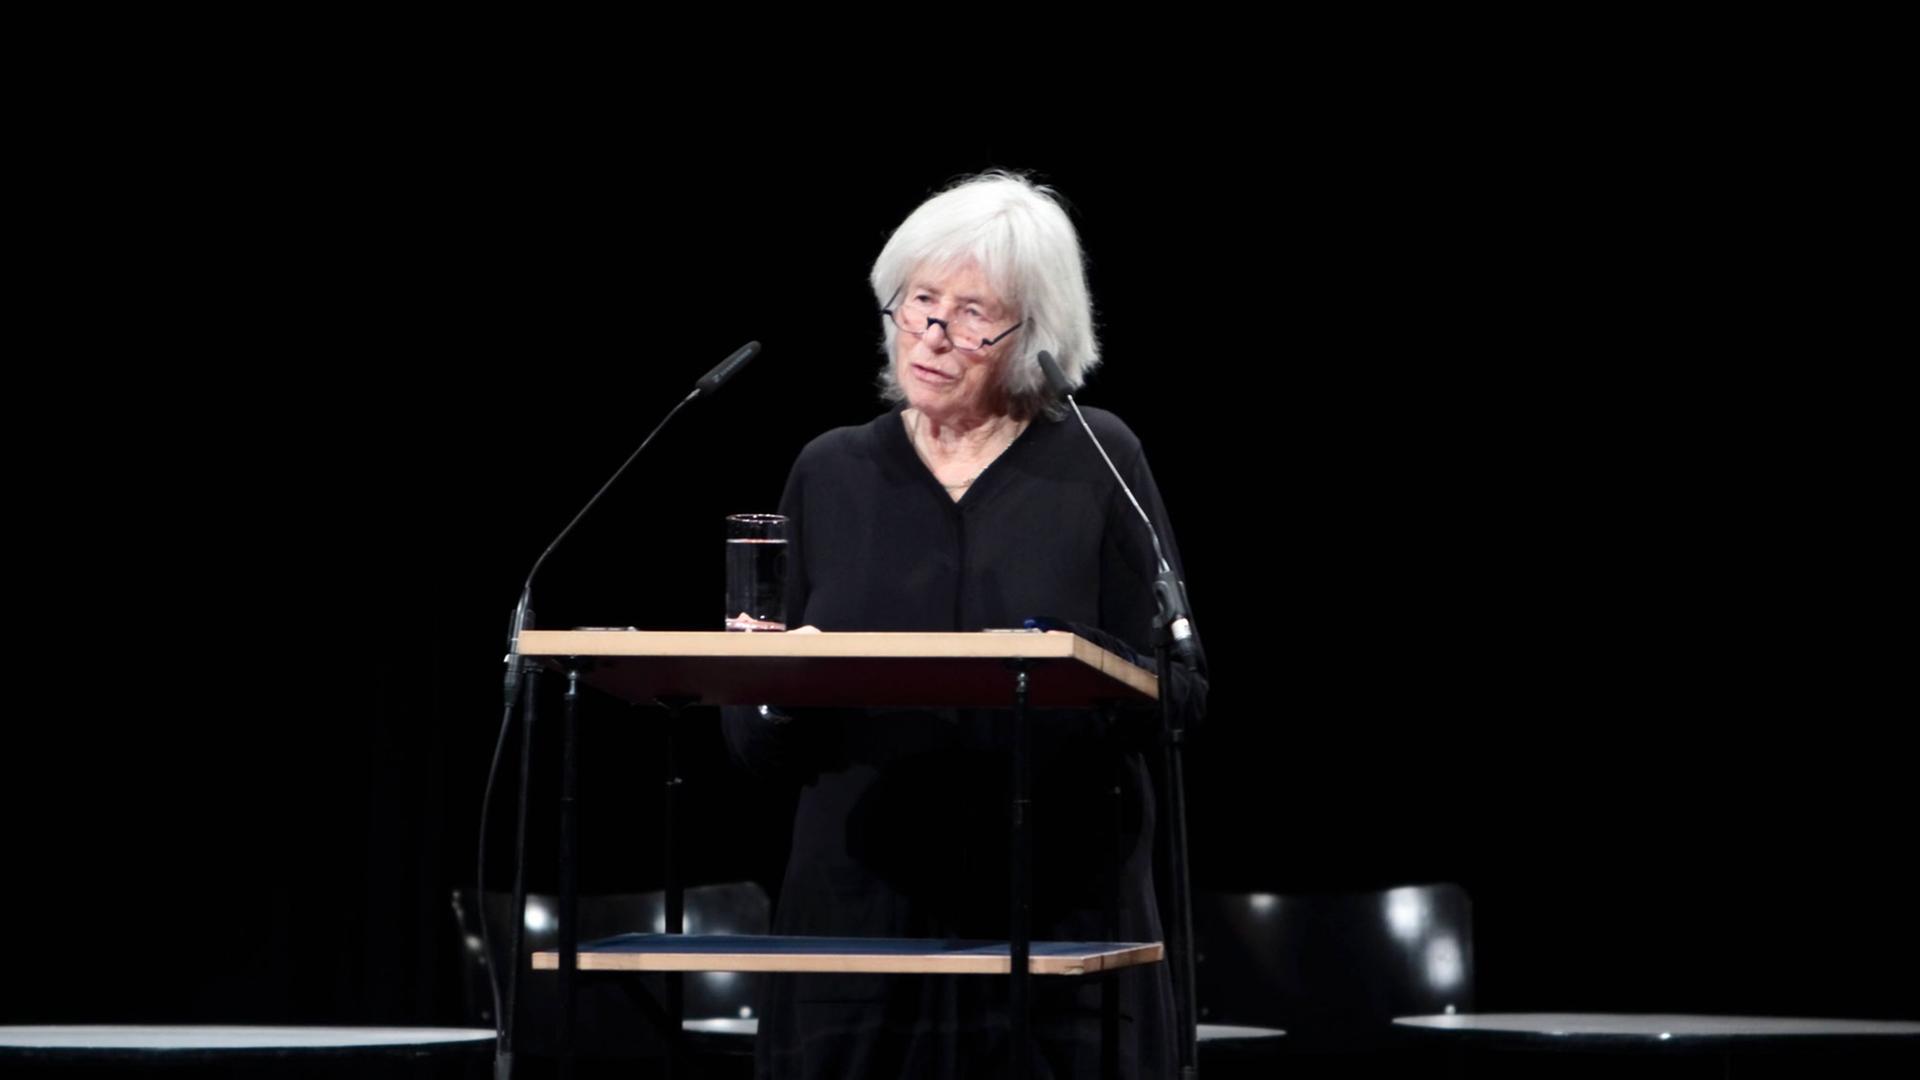 Nele Hertling hält eine Rede in der Akademie der Künste in Berlin - bei der Gedenkveranstaltung an Christa Wolf